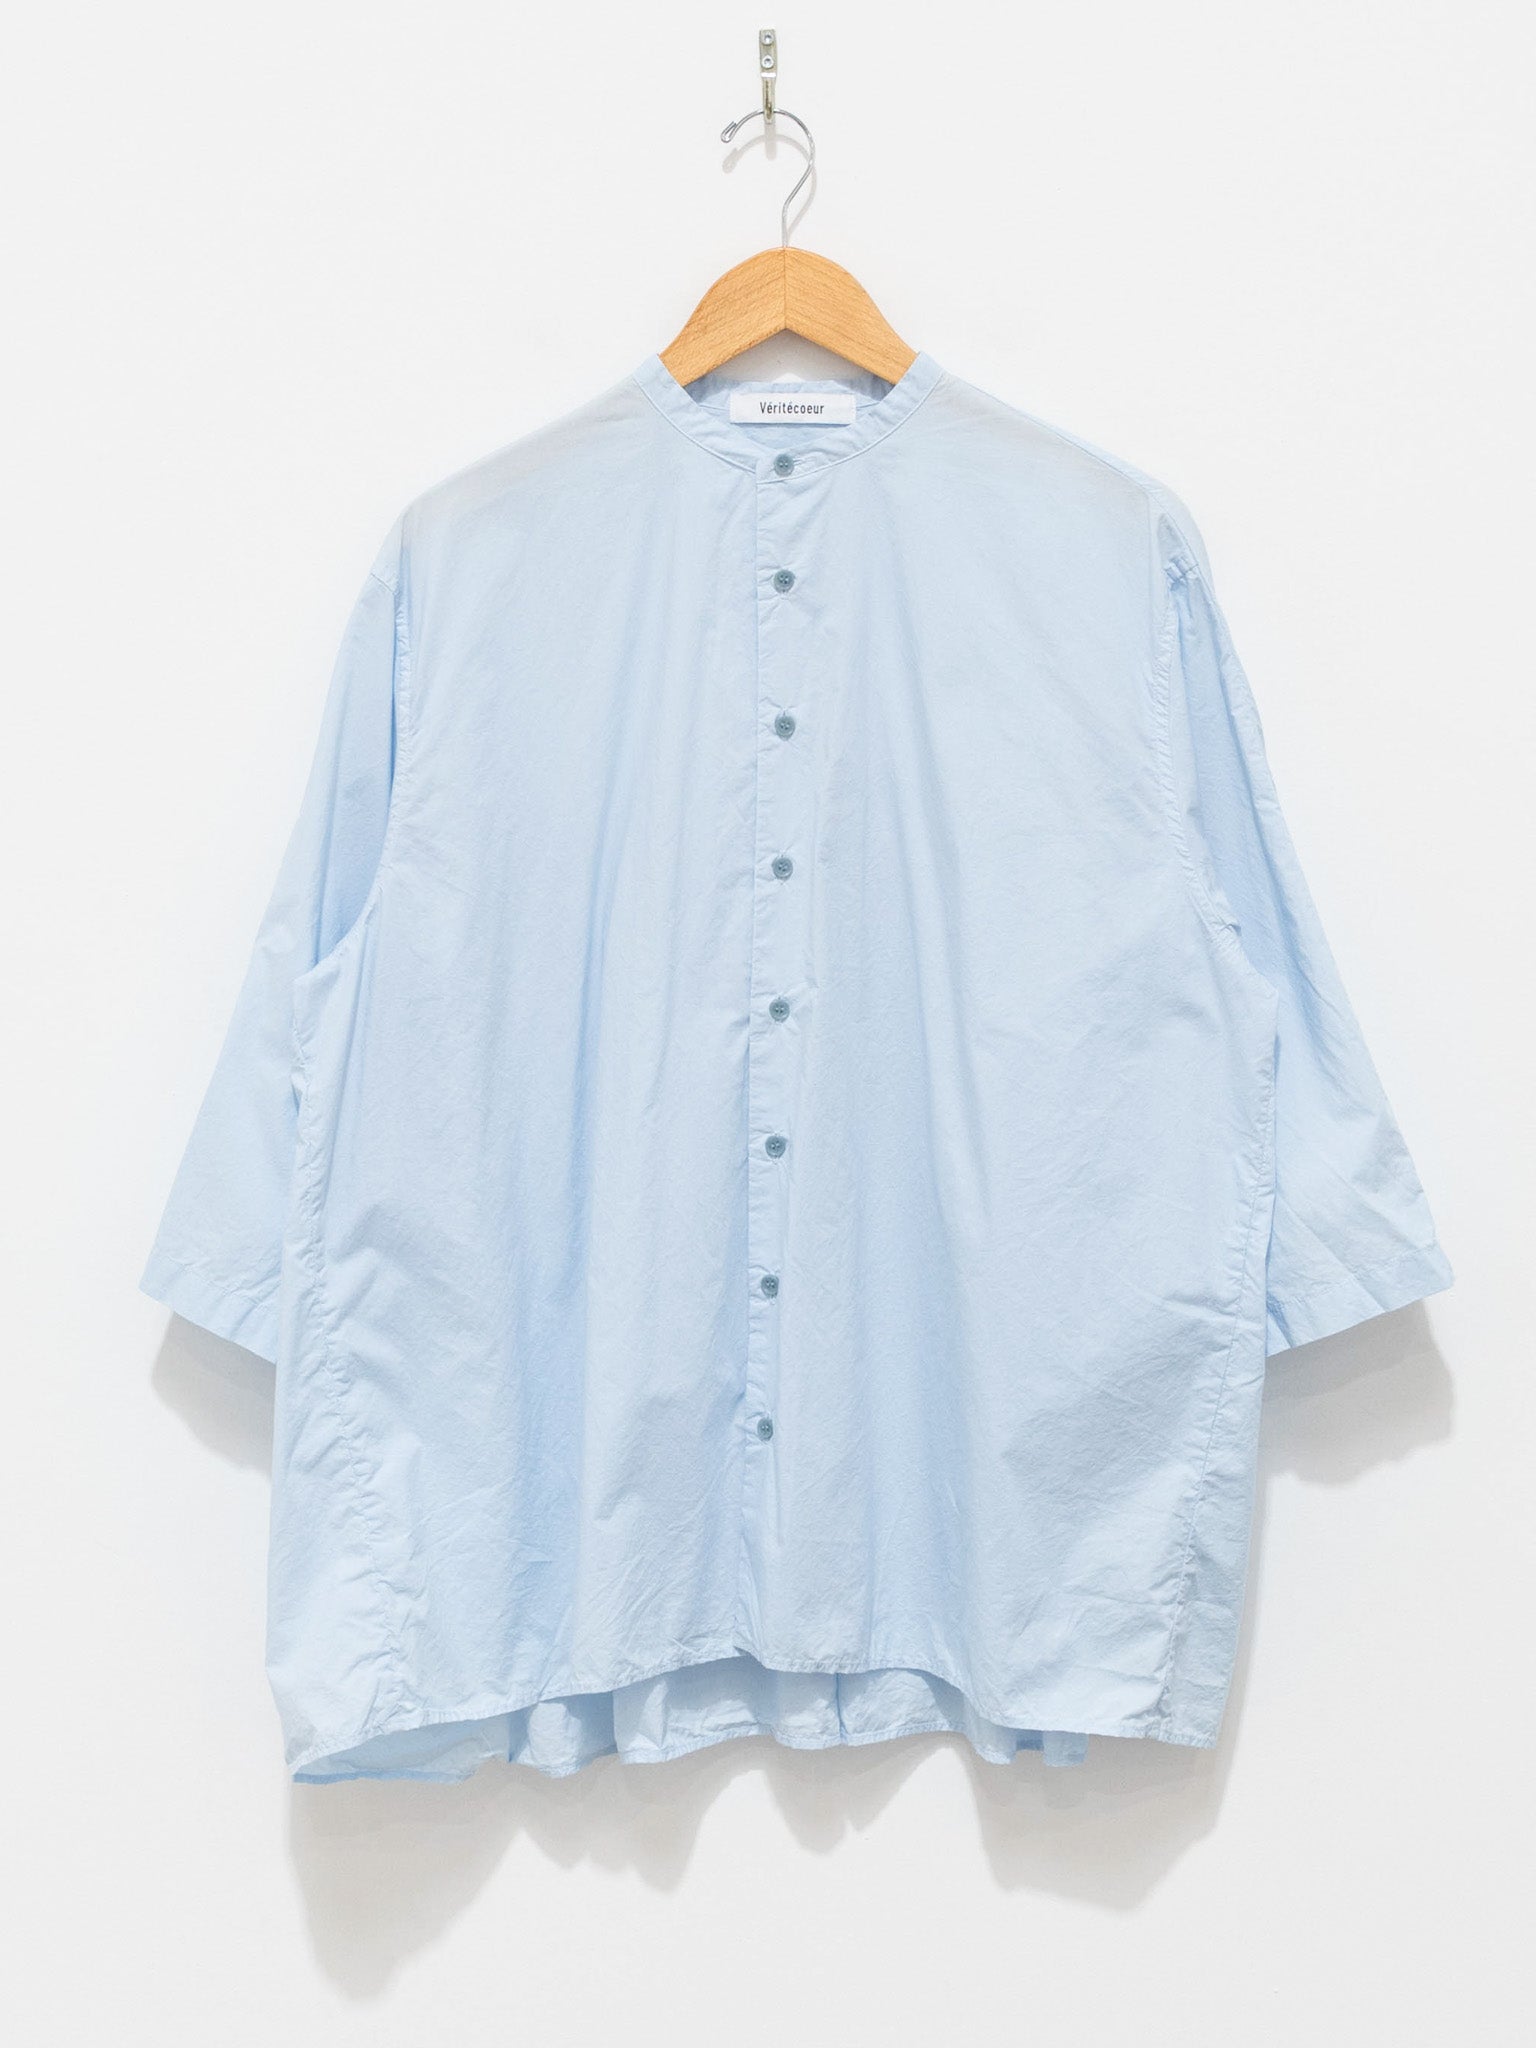 Namu Shop - Veritecoeur Band Collar Gather Back Shirt - Blue